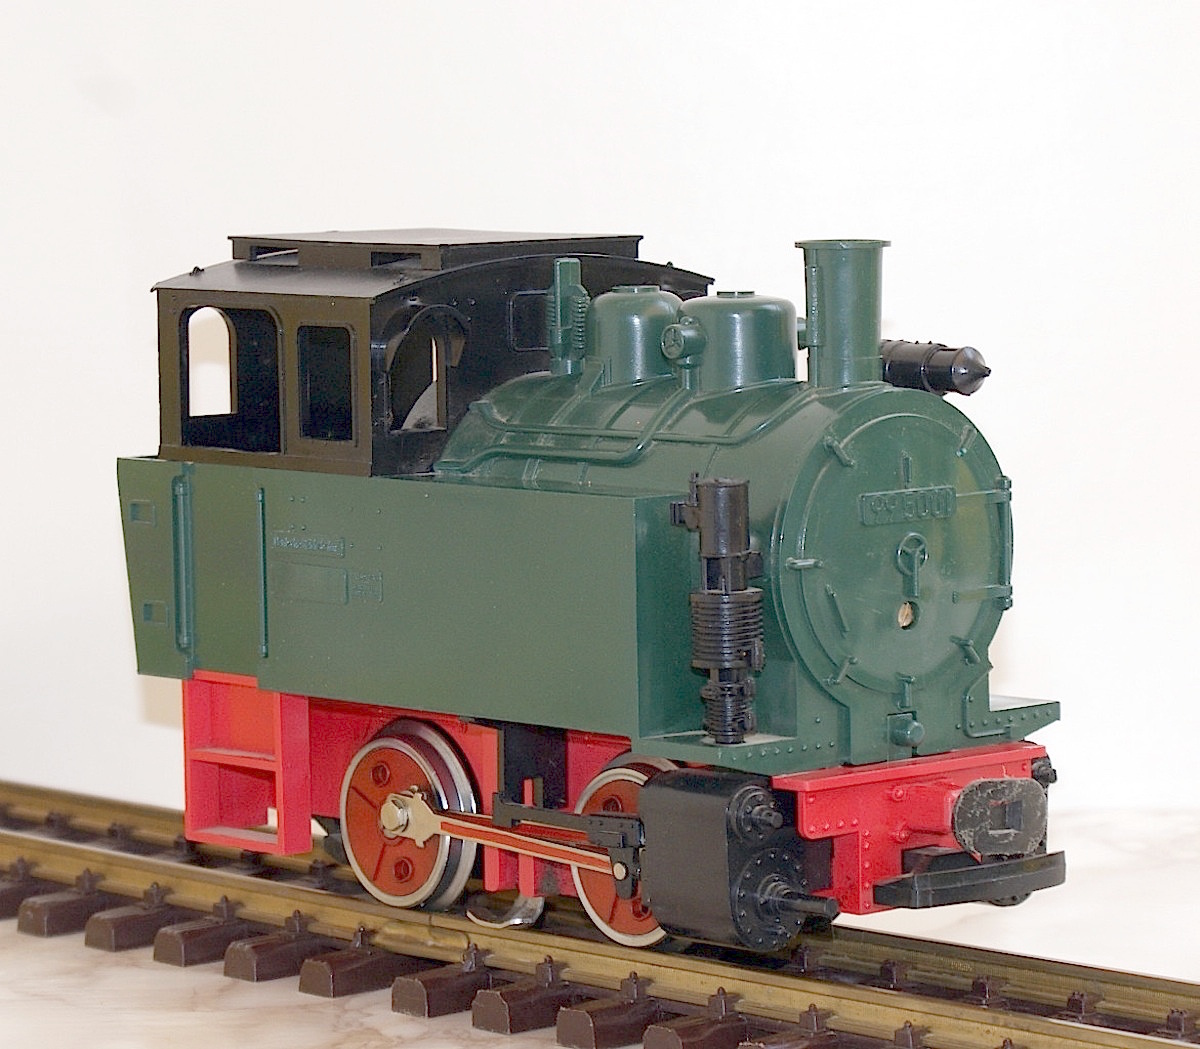 DR Dampflok (Steam Locomotive) 99 5001 Primus